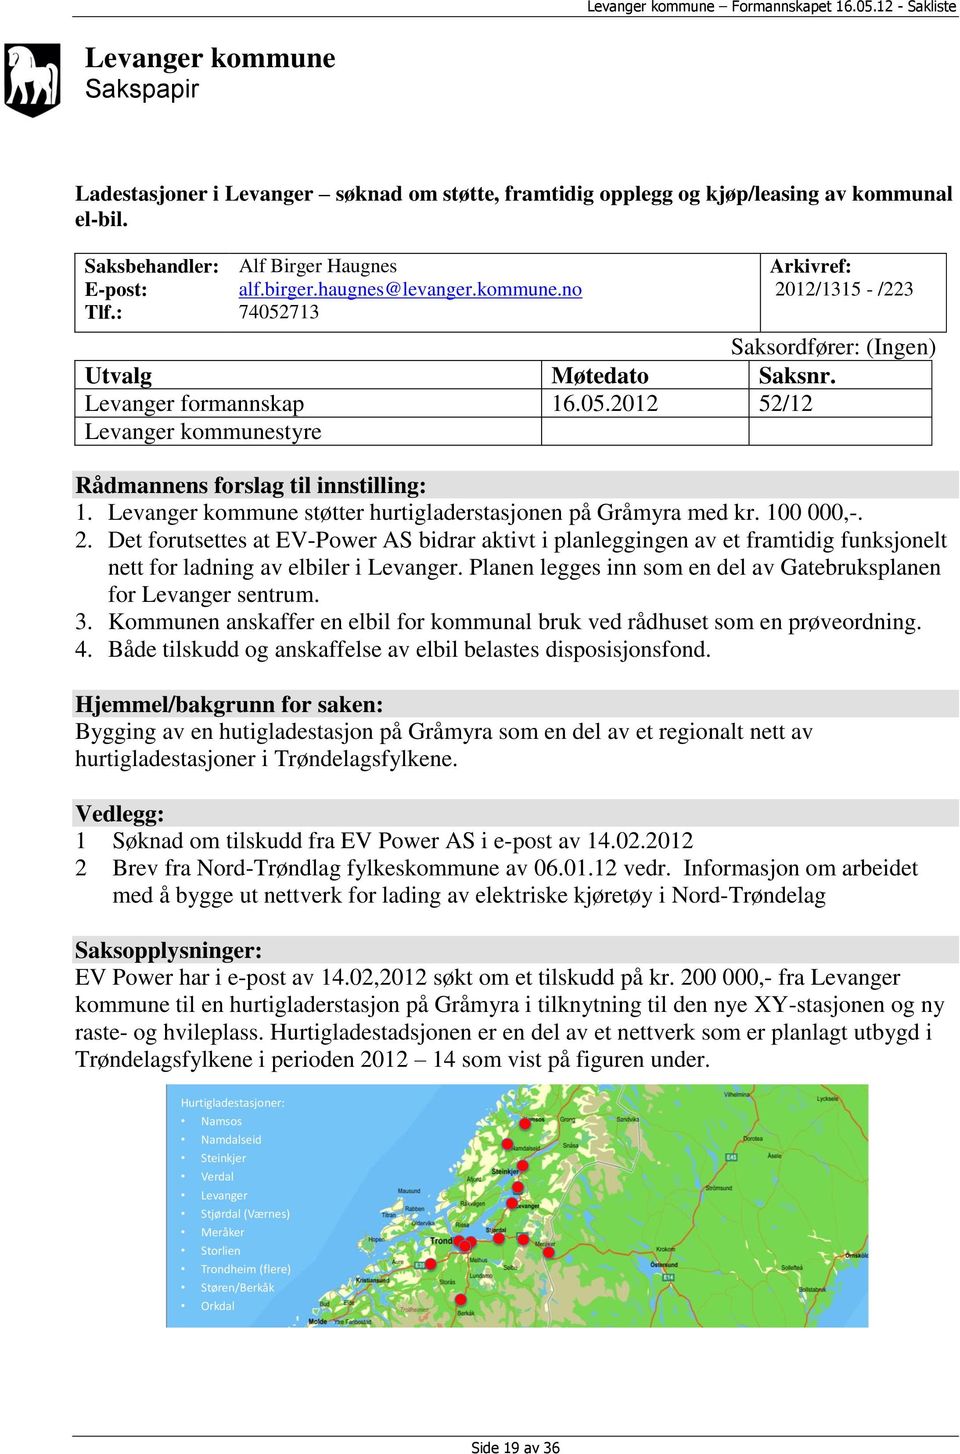 Levanger kommune støtter hurtigladerstasjonen på Gråmyra med kr. 100 000,-. 2.